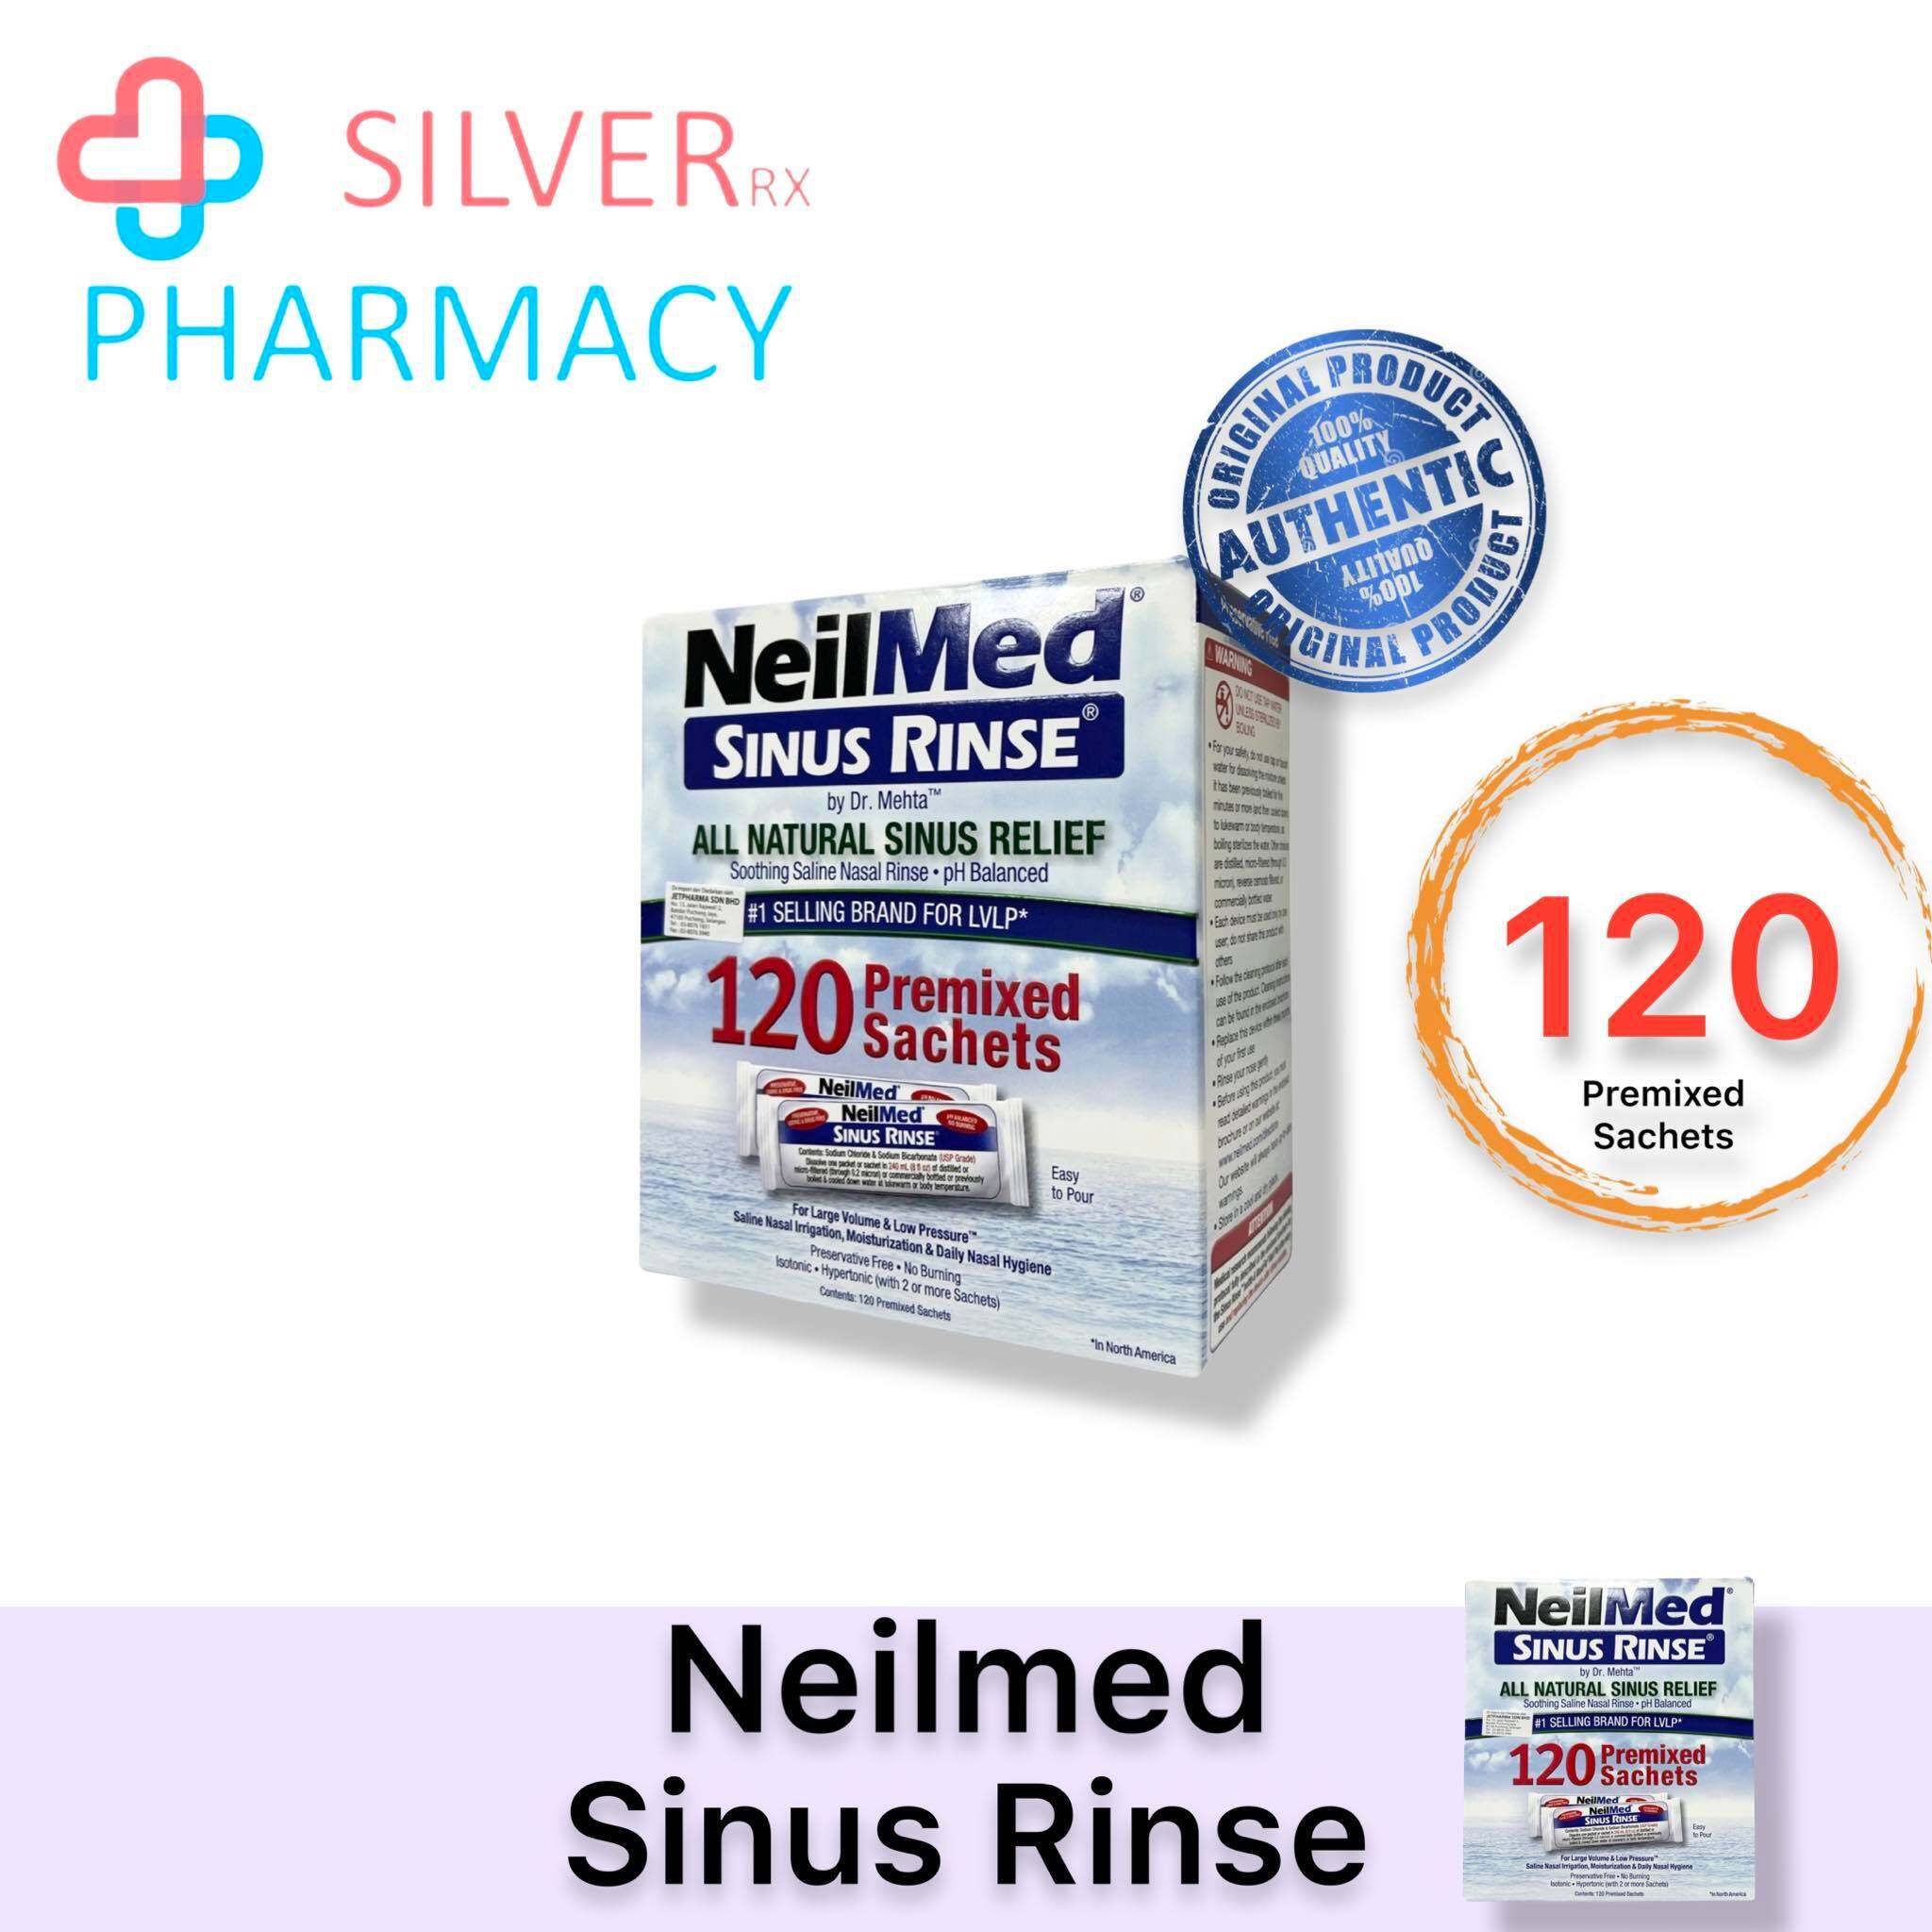 [Exp 09/2026] NeilMed Sinus Rinse [120 Premixed Sachets]